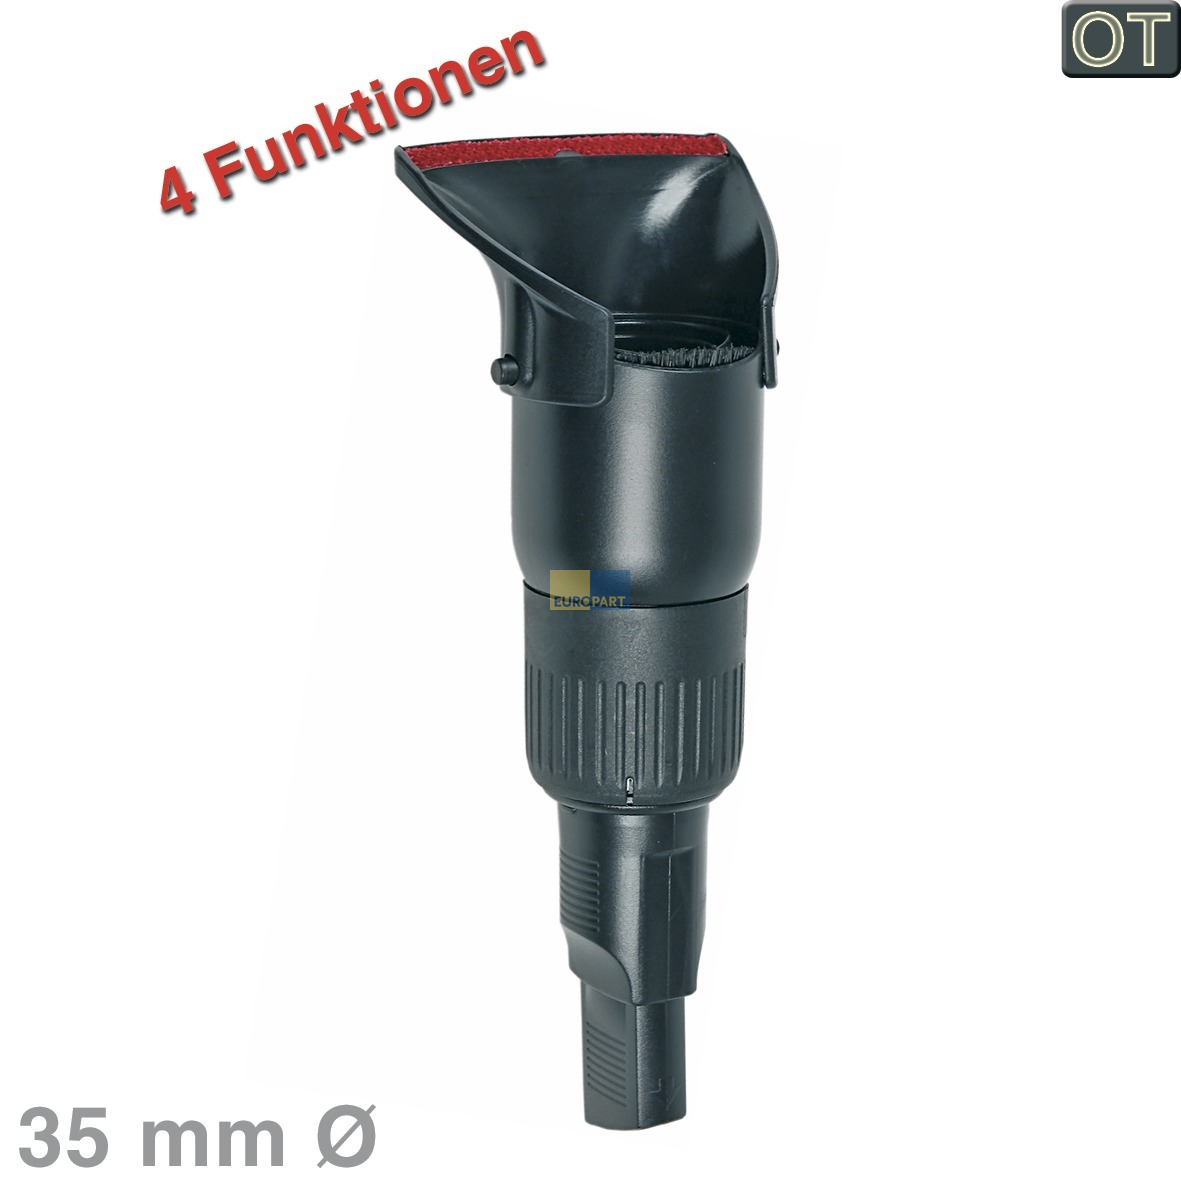 Kombidüse BSH 00483339 4 Funktionen für 35mm Rohr- für Staubsauger (KD-00483339)